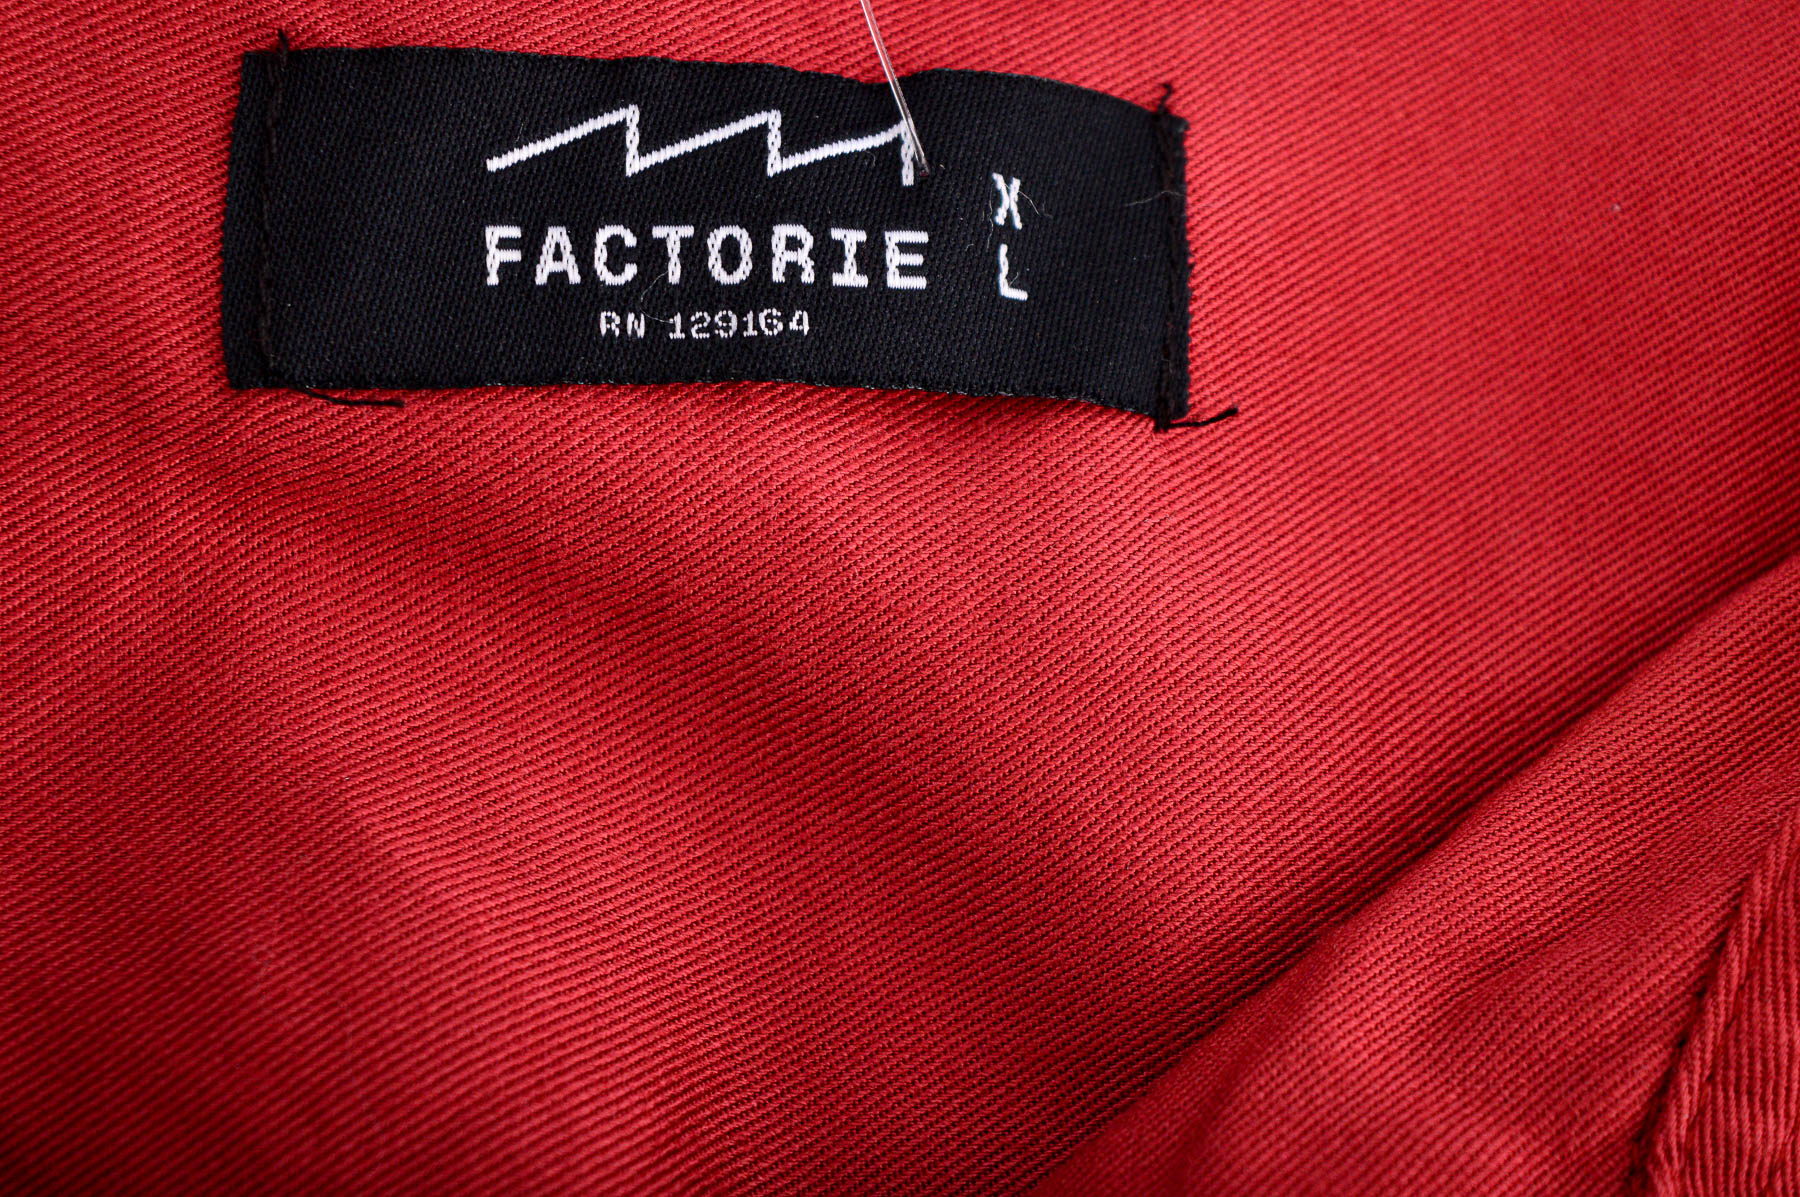 Men's shirt - Factorie - 2